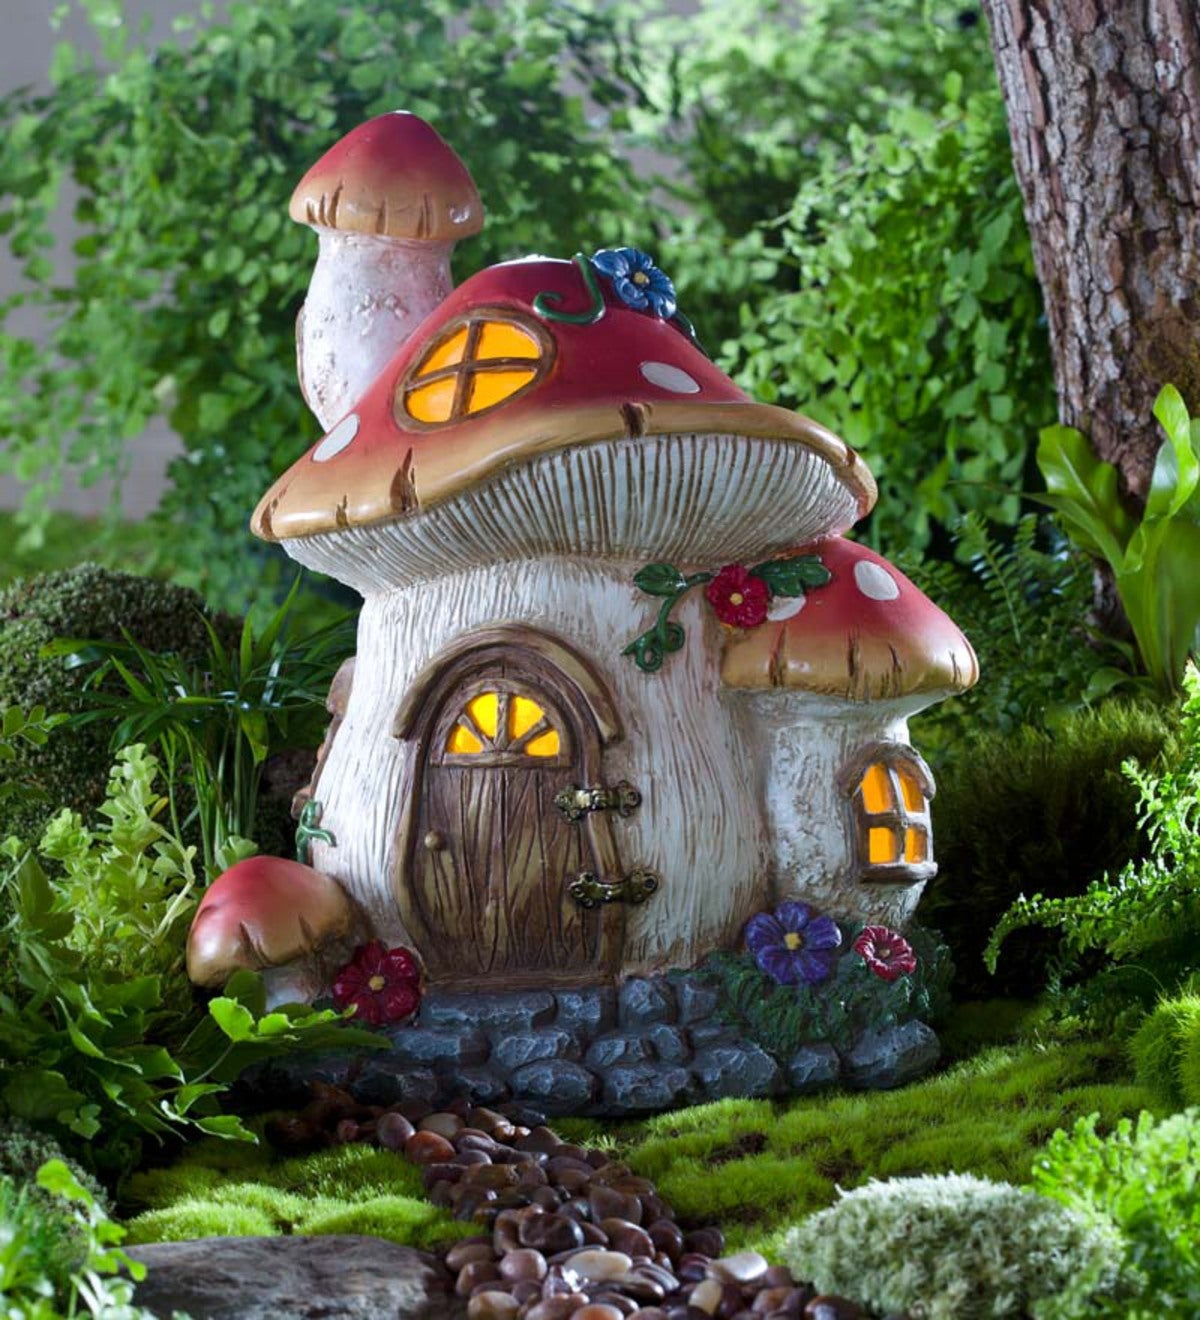 Fairy Mushrooms Mini Mushrooms Fairy Garden Glowing Mushrooms 